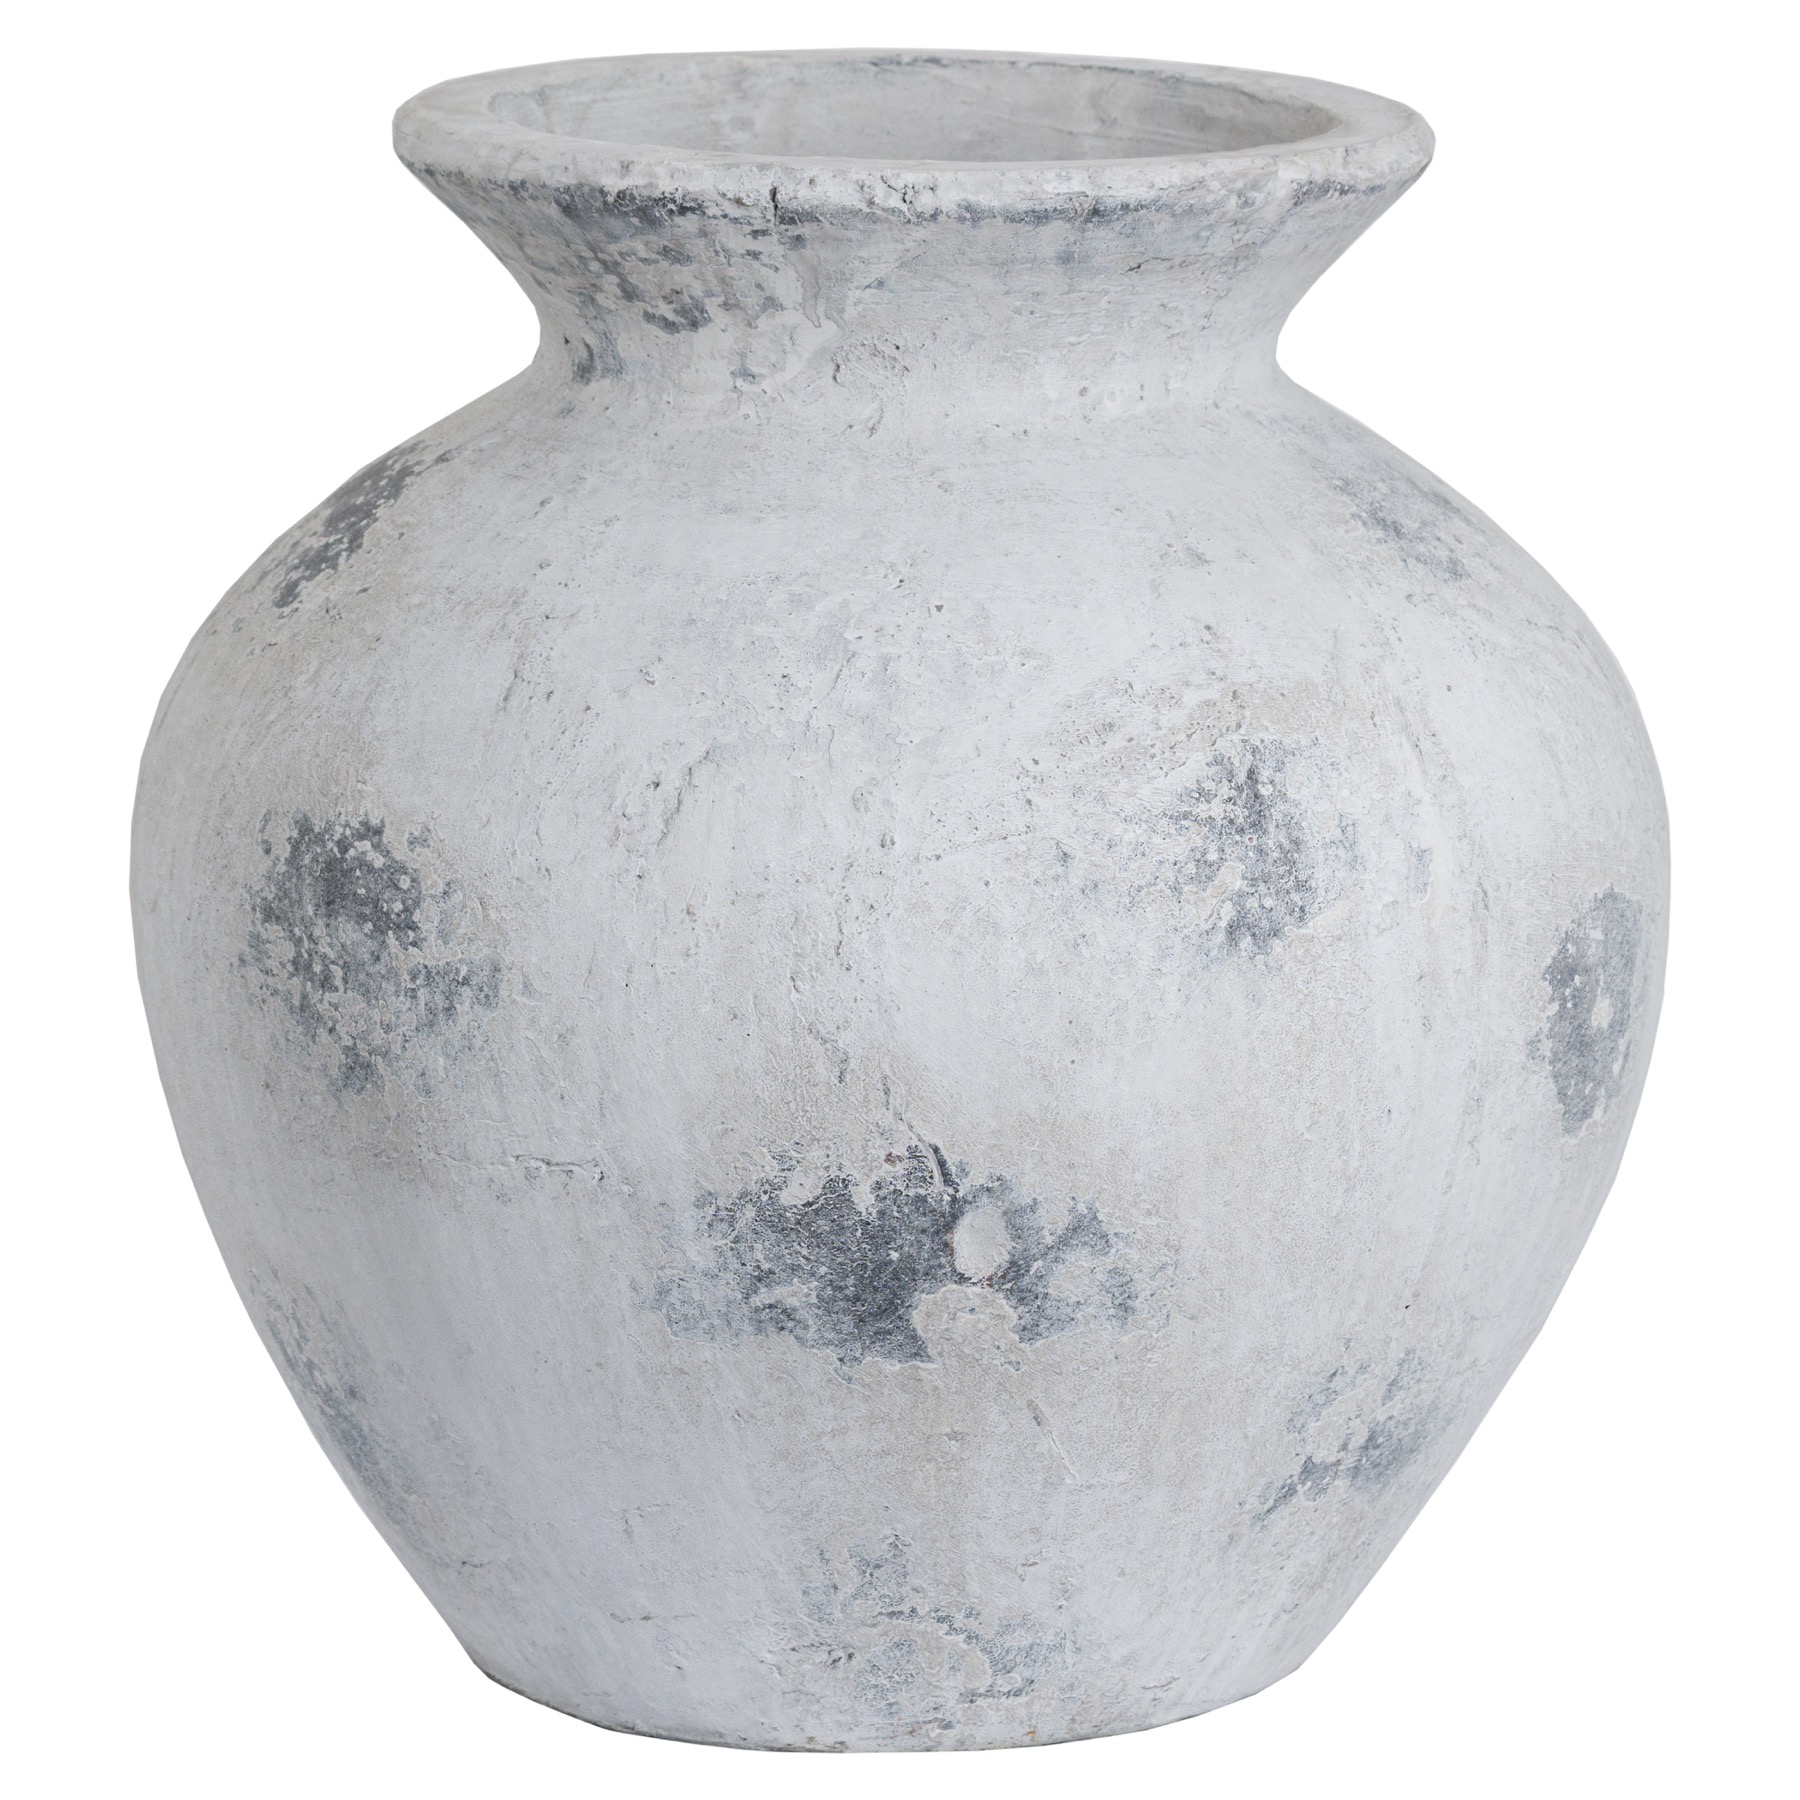 Downton Large Antique White Vase - Image 1